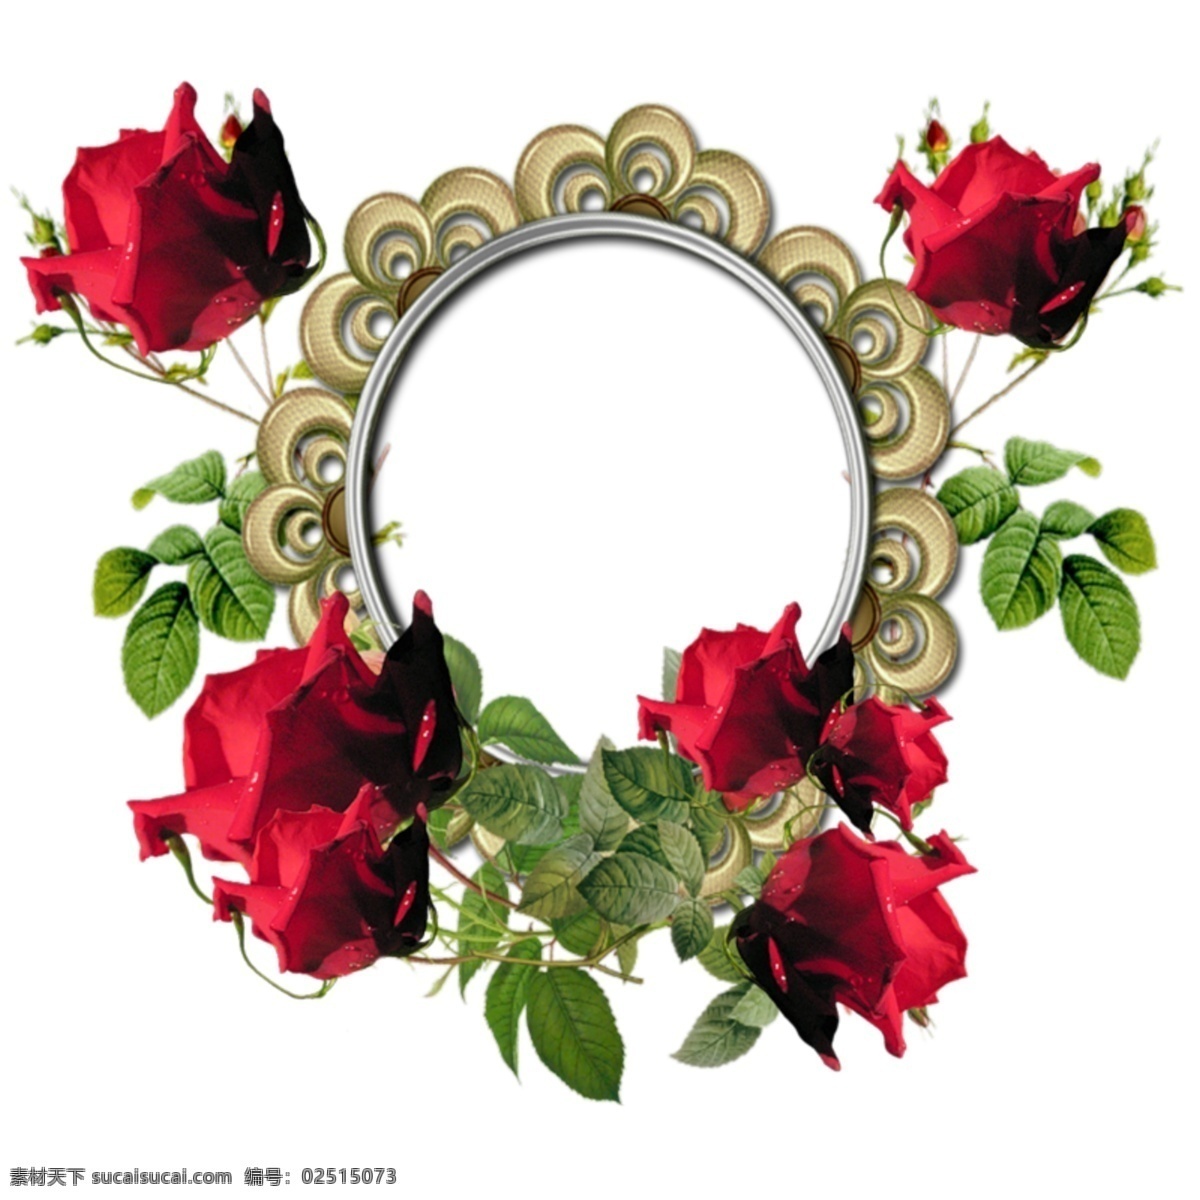 红玫瑰 椭圆 边框 免 抠 透明 花边 装饰 花卉 图形 花卉花边图形 花卉边框素材 花卉镜框素材 花卉相框